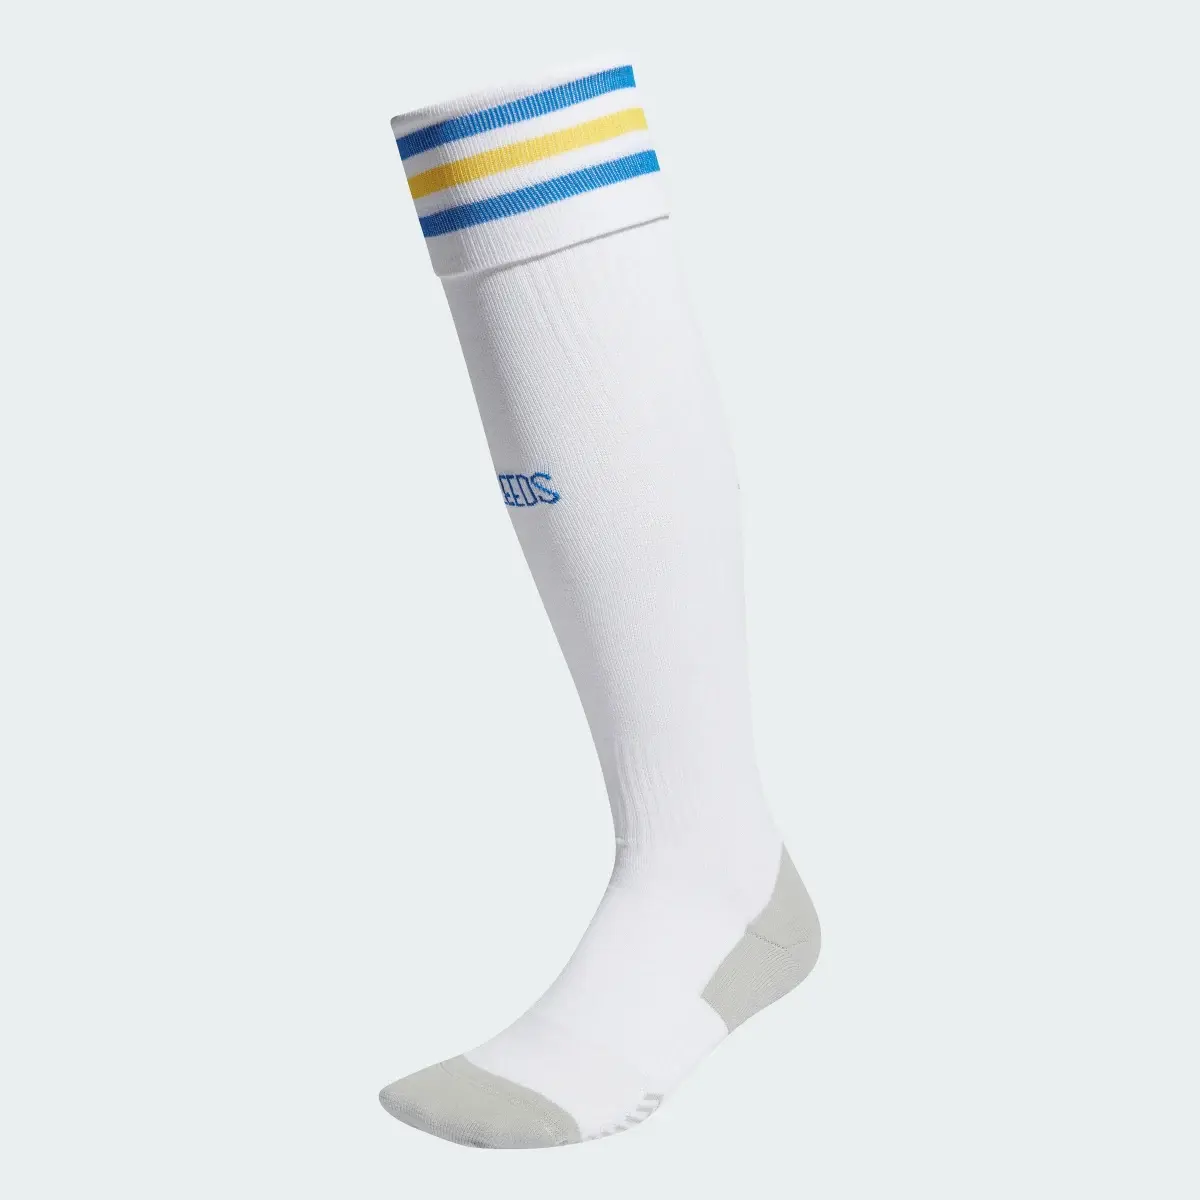 Adidas Leeds United FC 23/24 Home Socks. 1